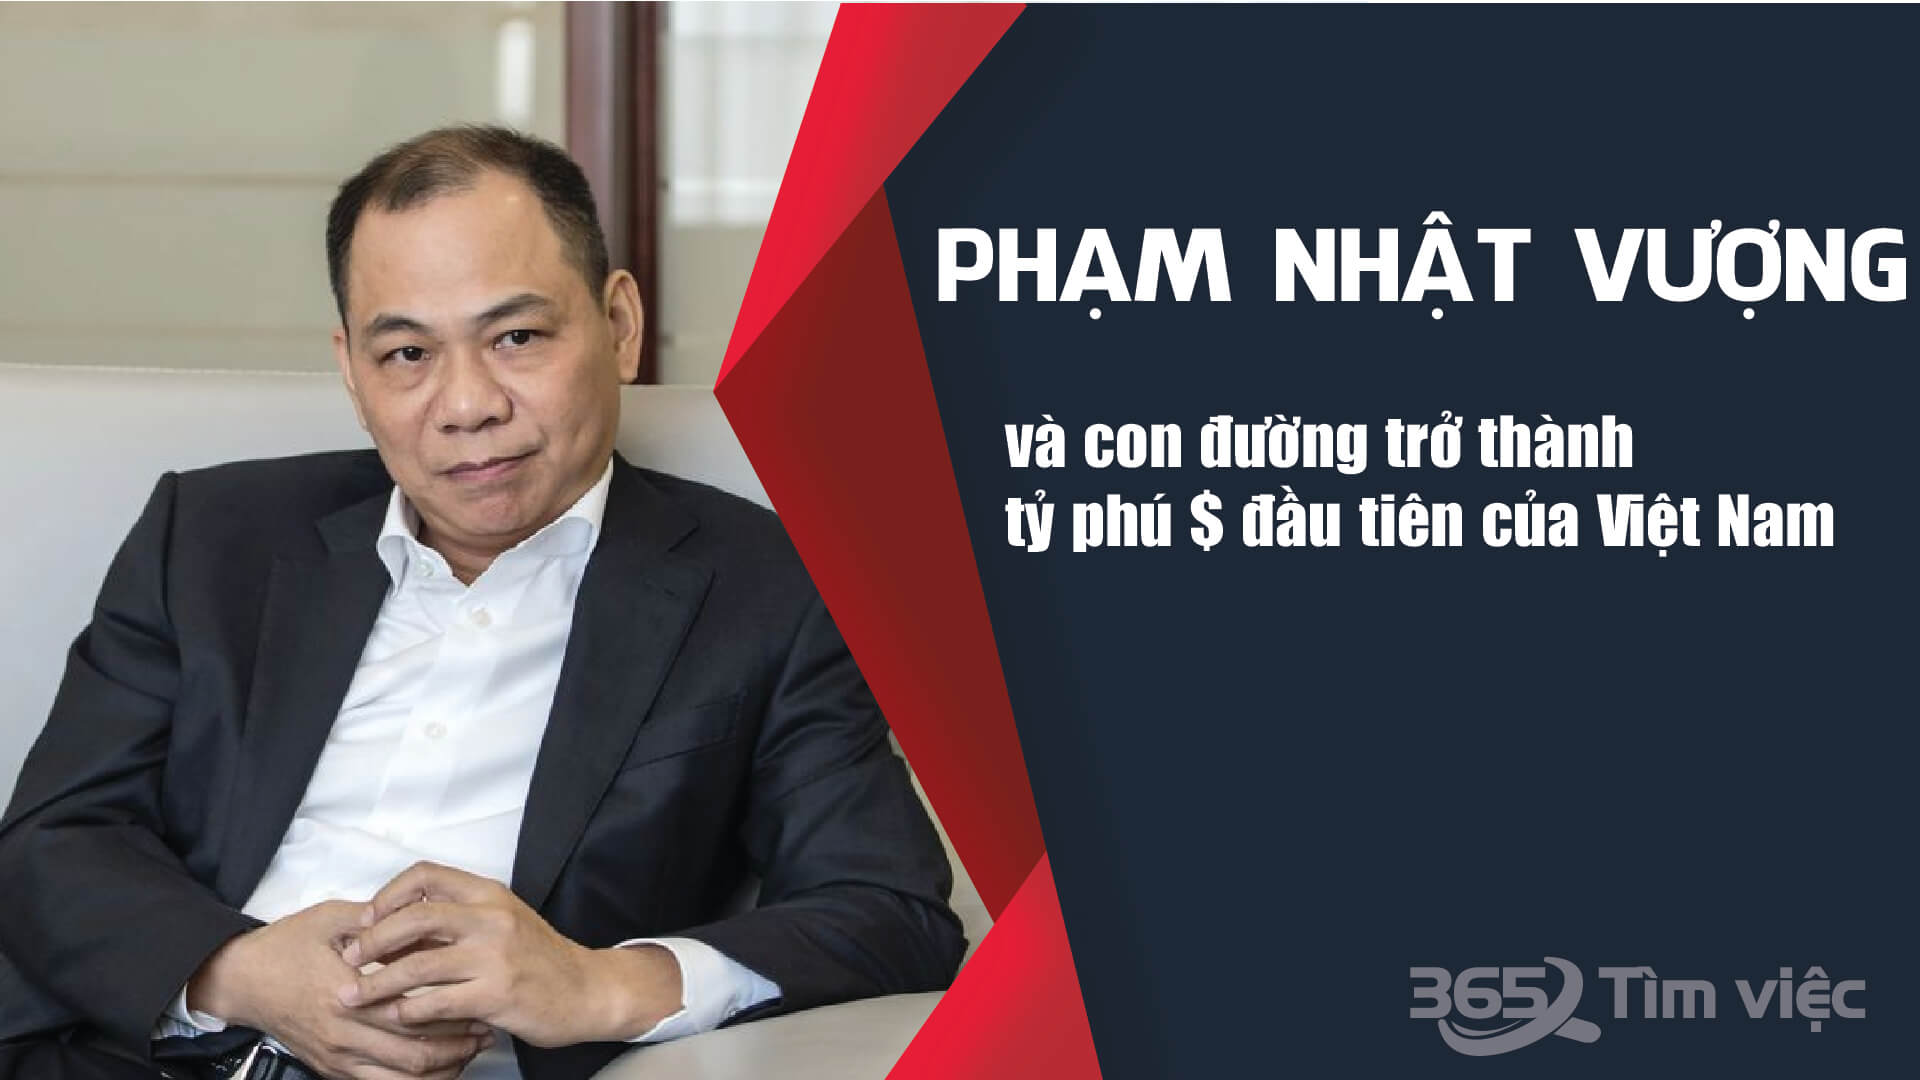 Phạm Nhật Vượng và con đường trở thành tỷ phú $ đầu tiên của Việt Nam